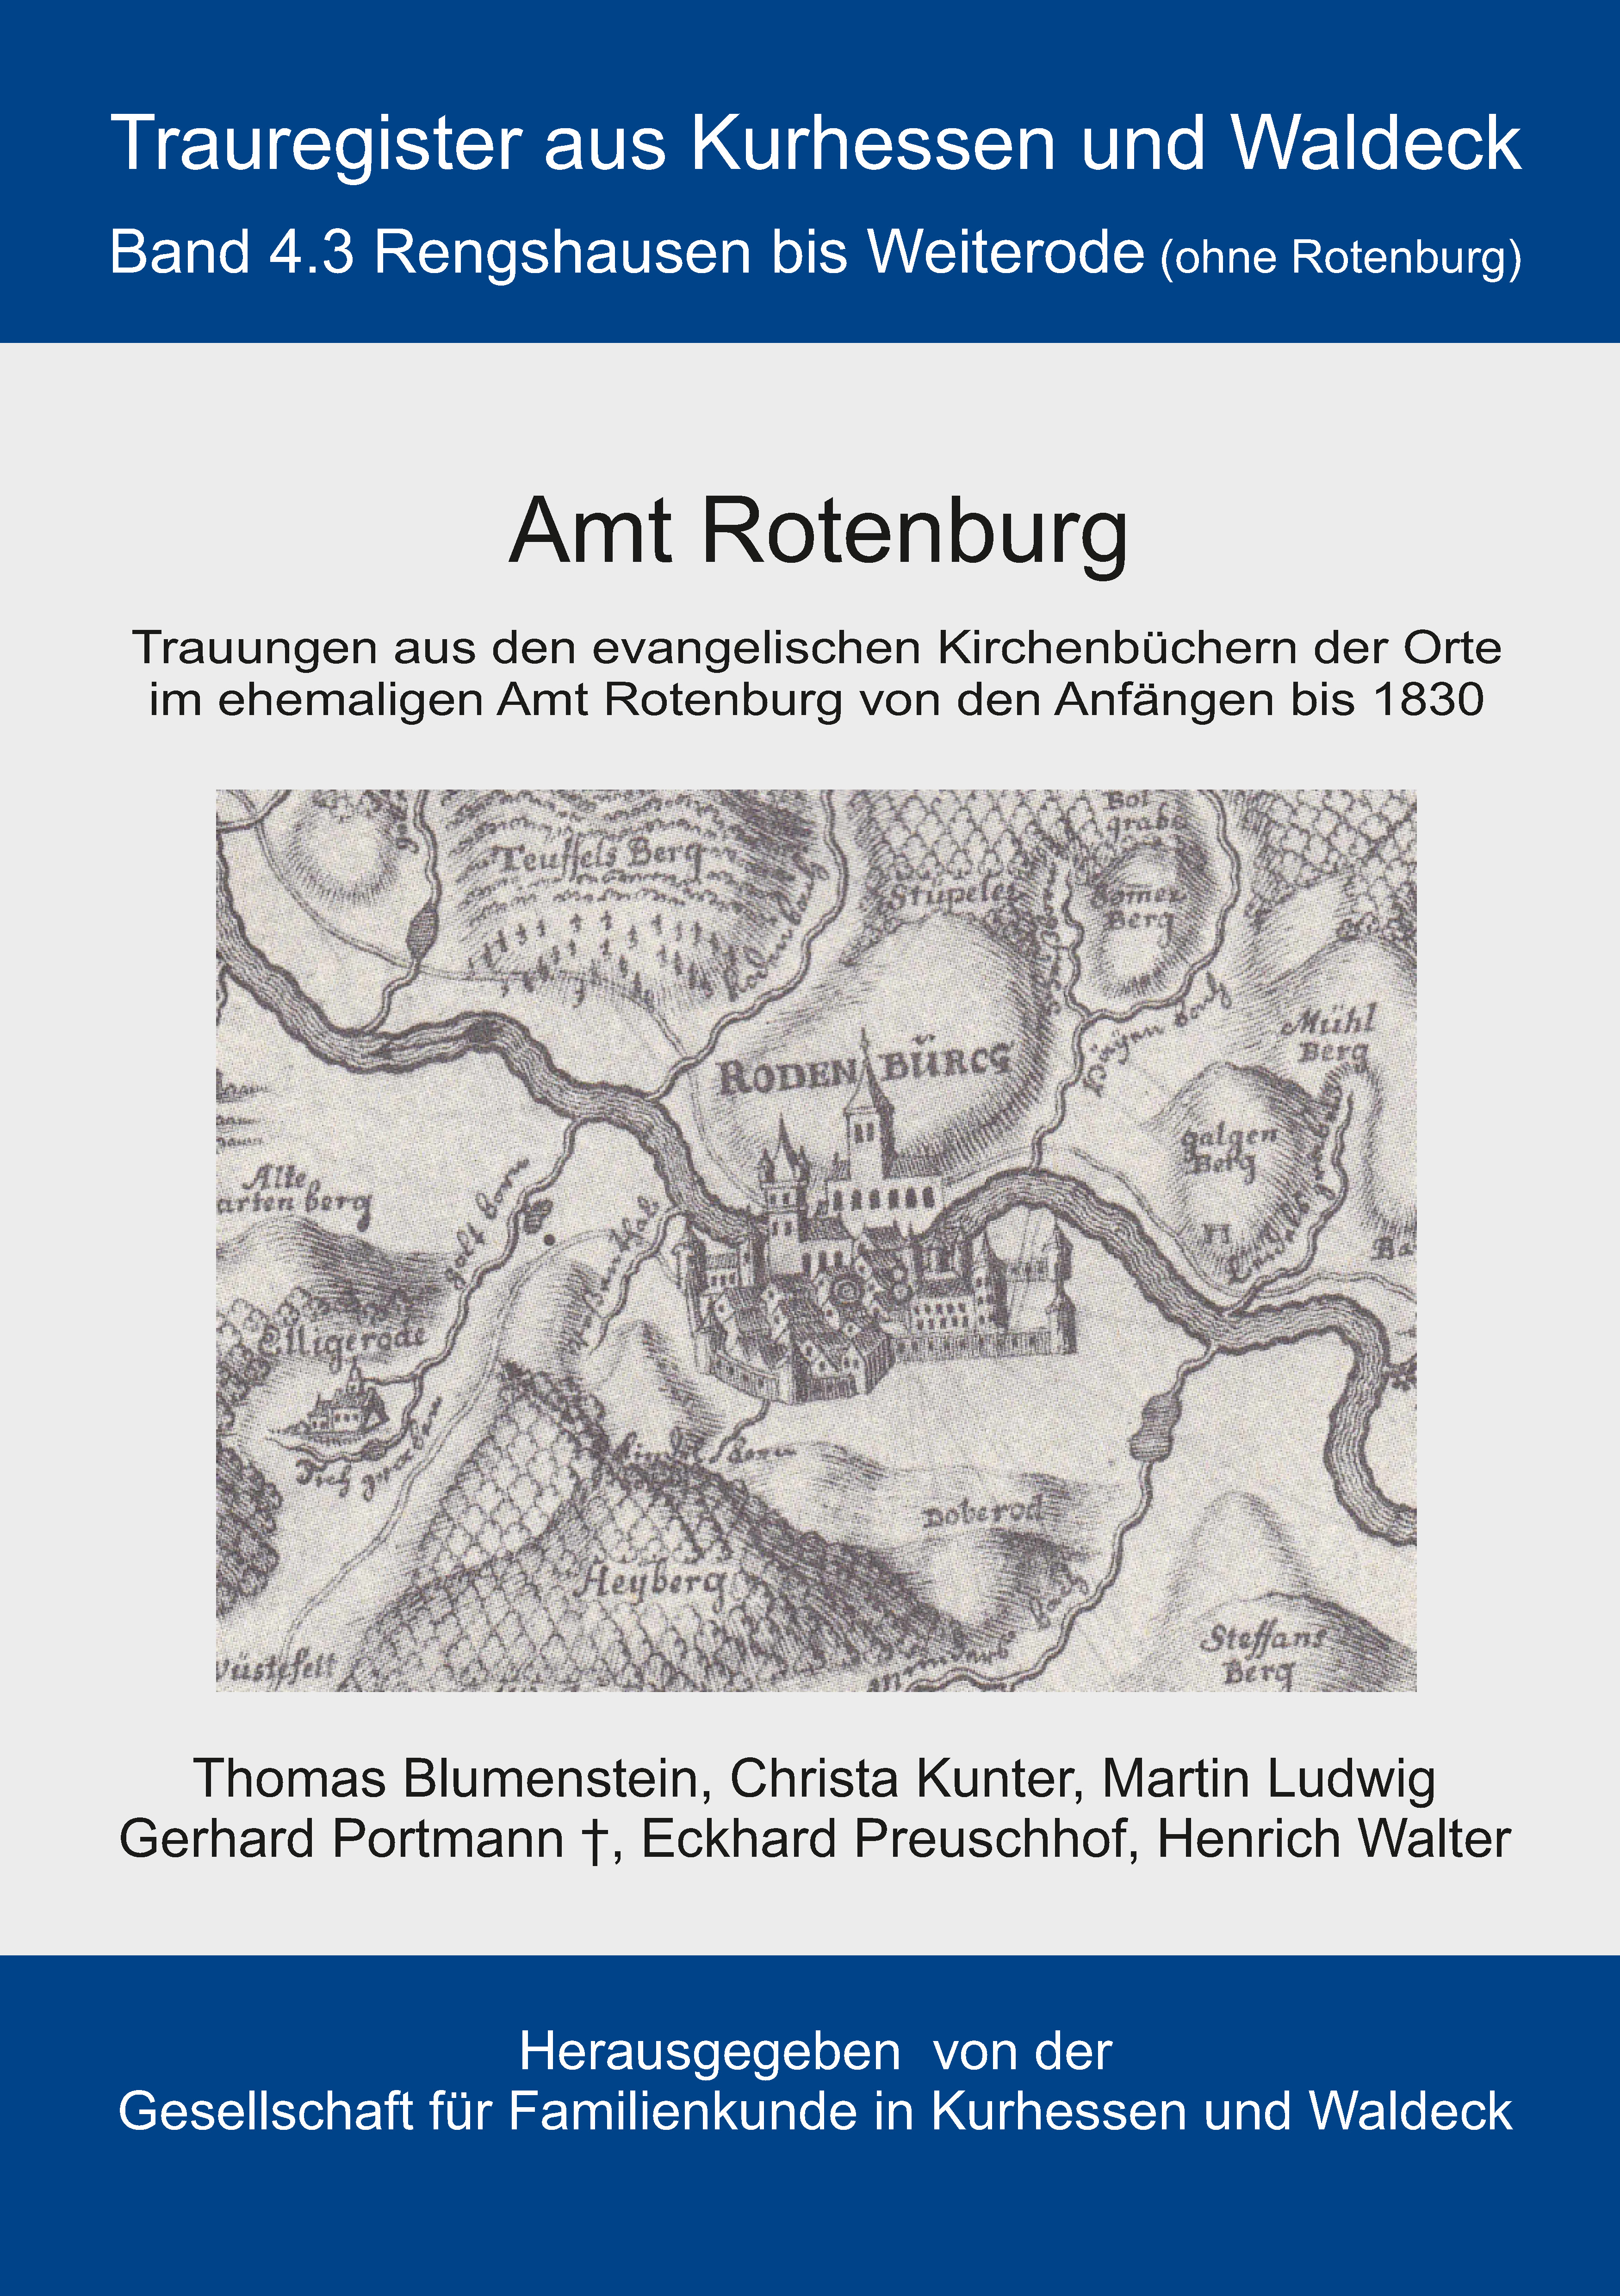 Trauregister aus Kurhessen und Waldeck, Band 4.3 Amt Rotenburg